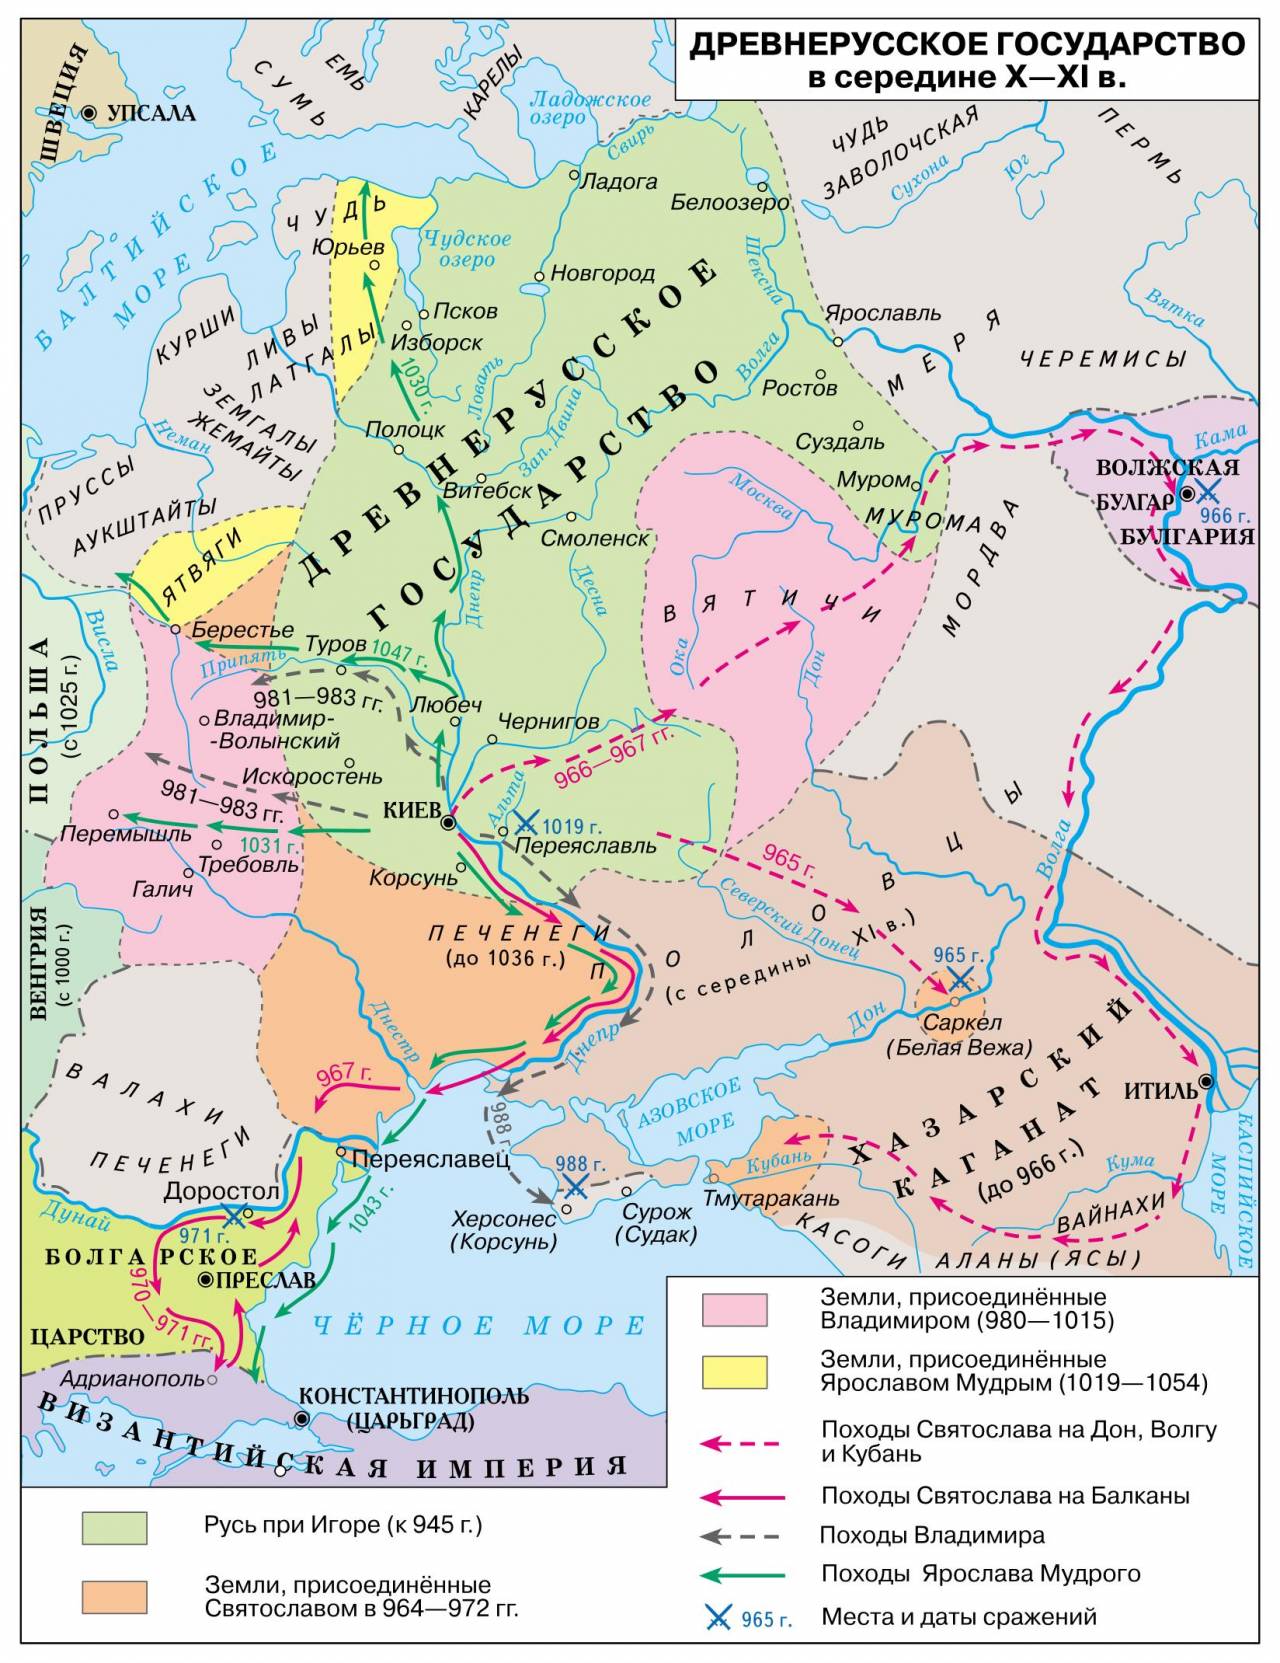 Волынская земля в X—XI веках